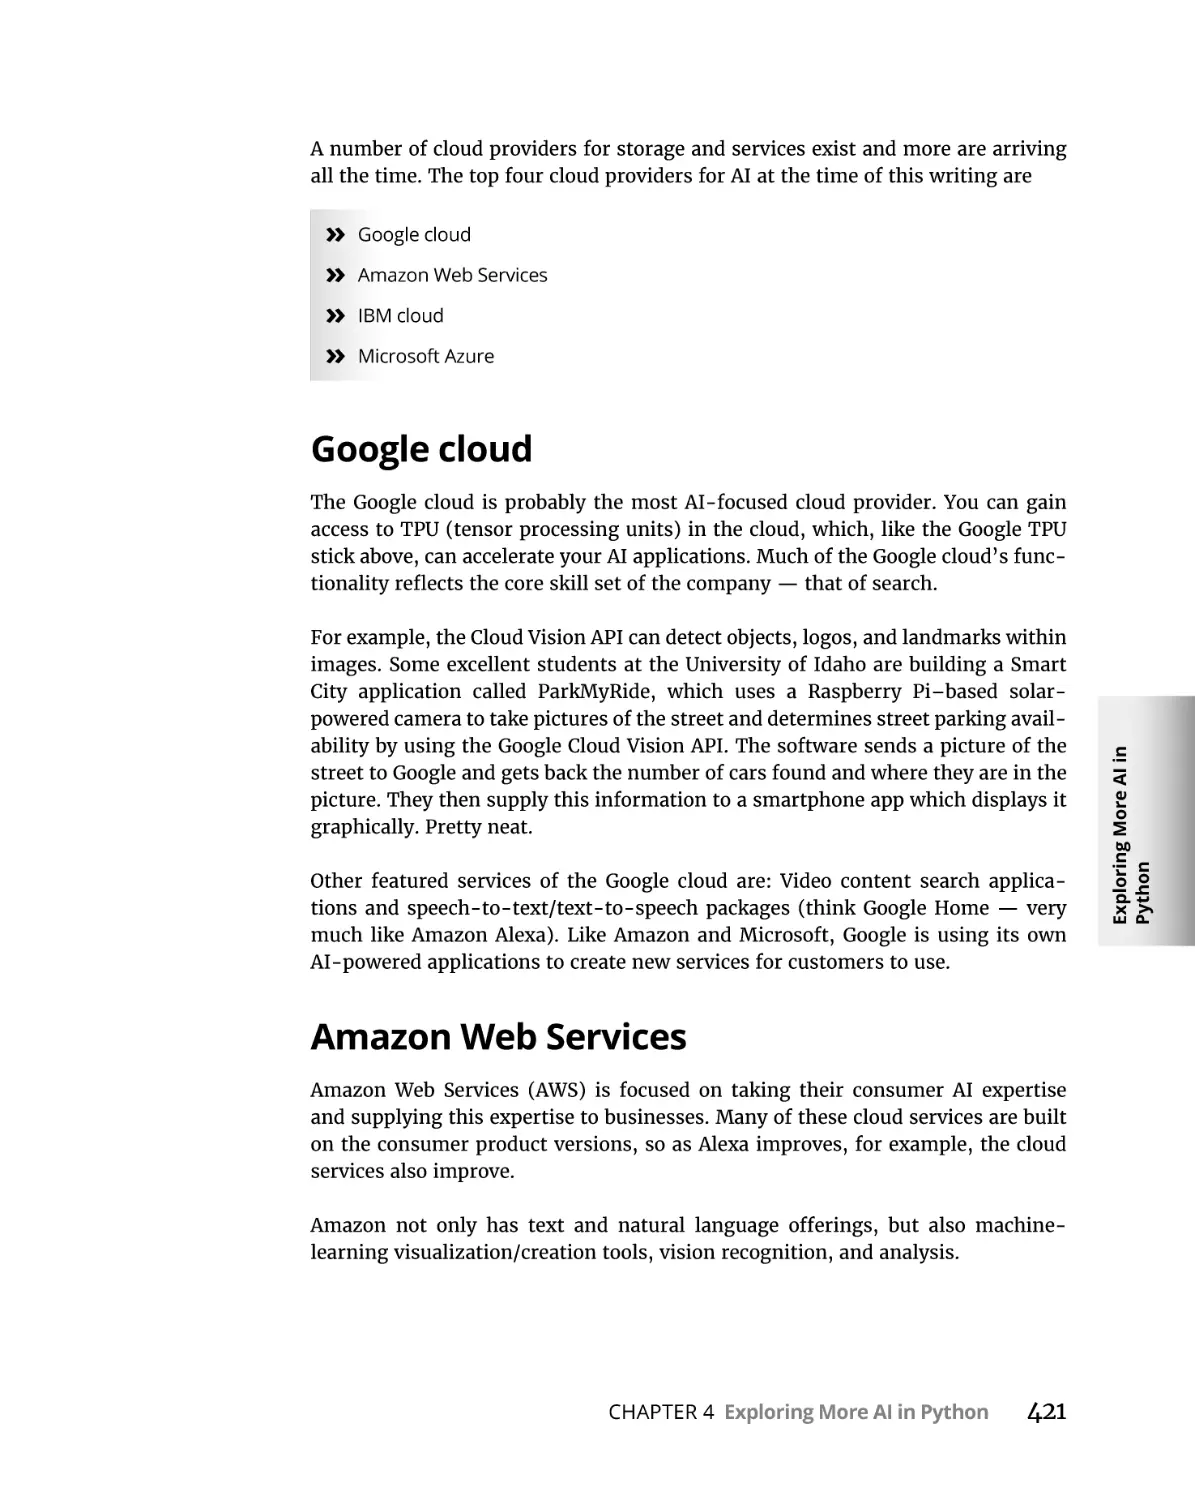 Google cloud
Amazon Web Services